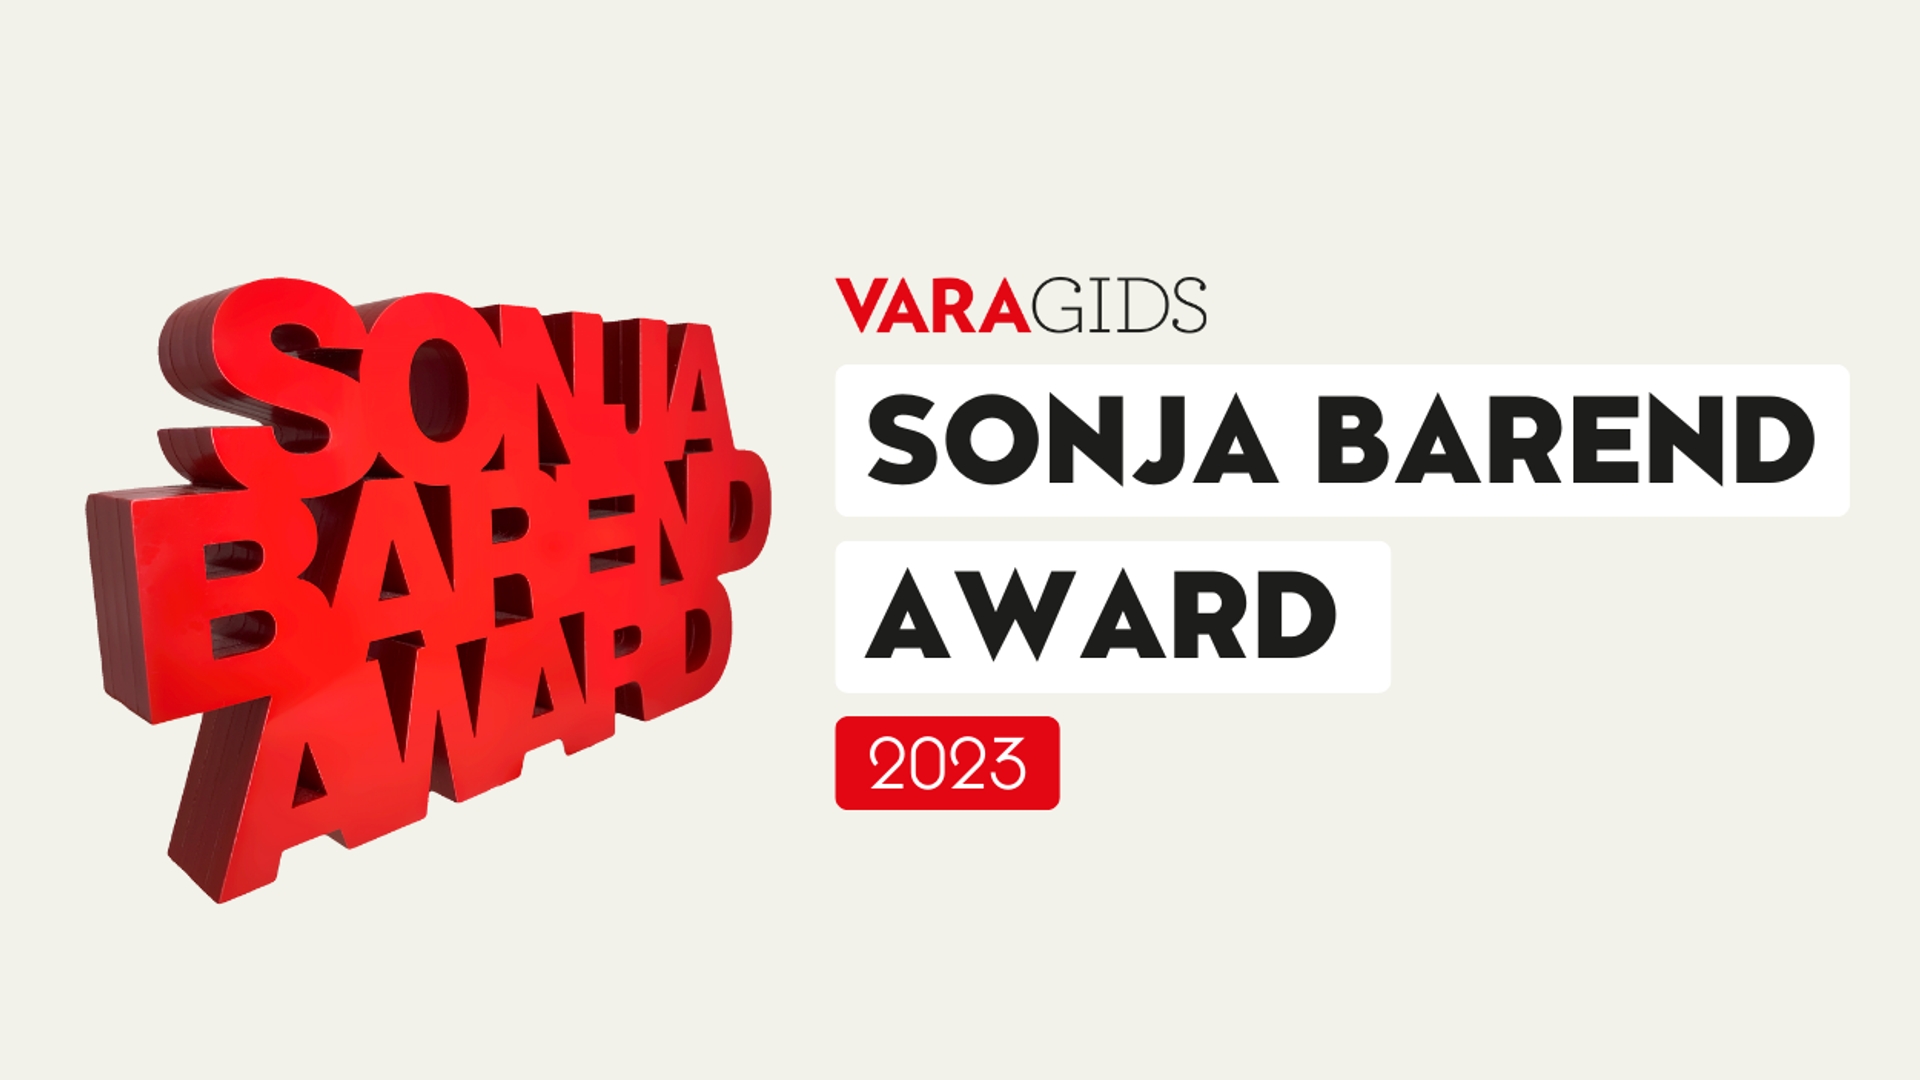 Sonja Barend Award 2023